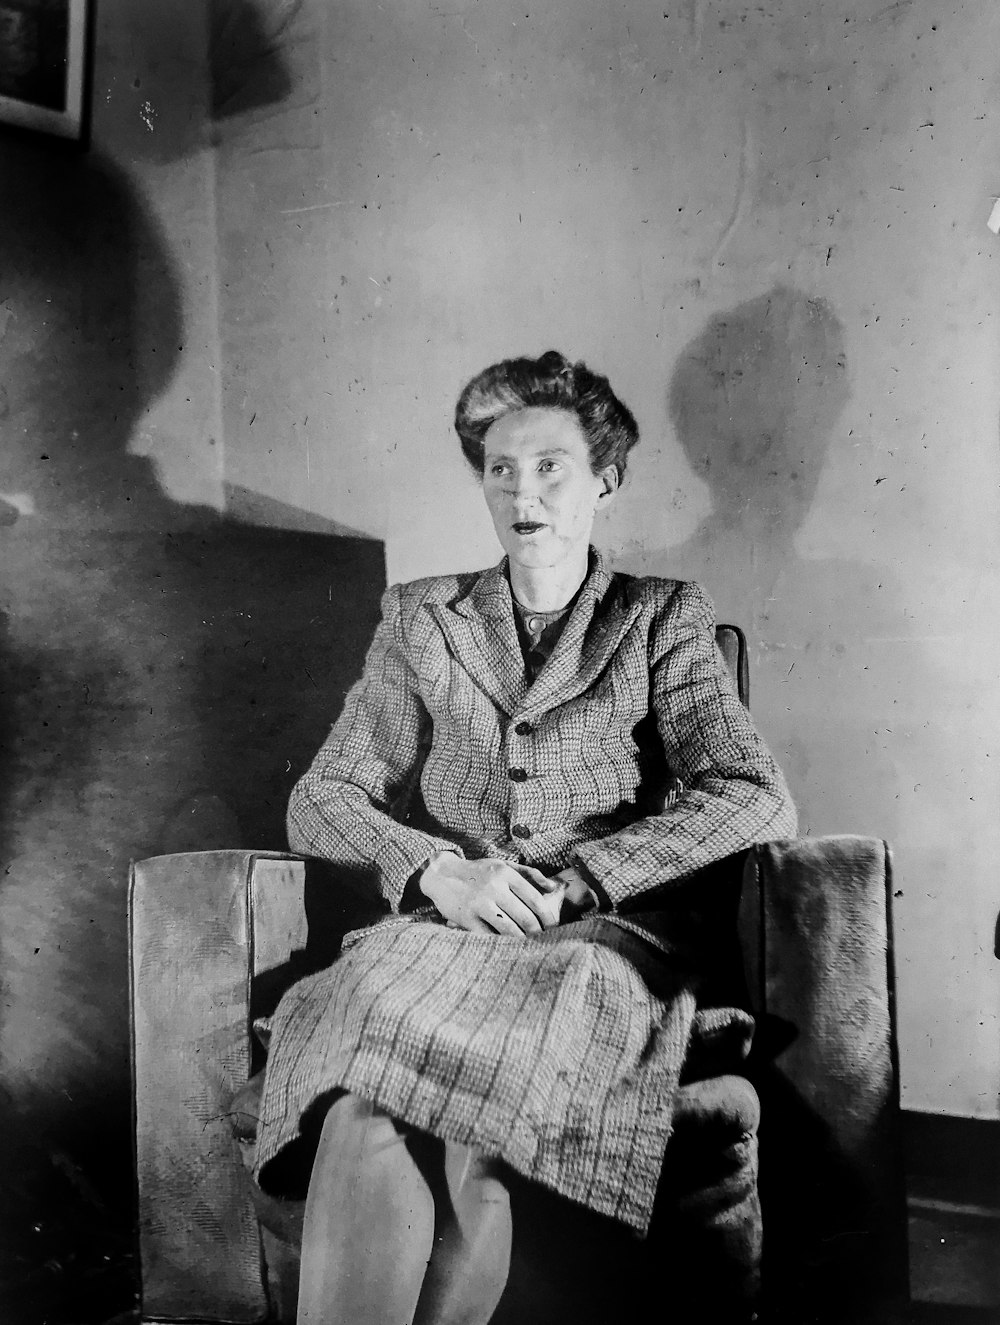 fotografia in scala di grigi di donna seduta sulla sedia